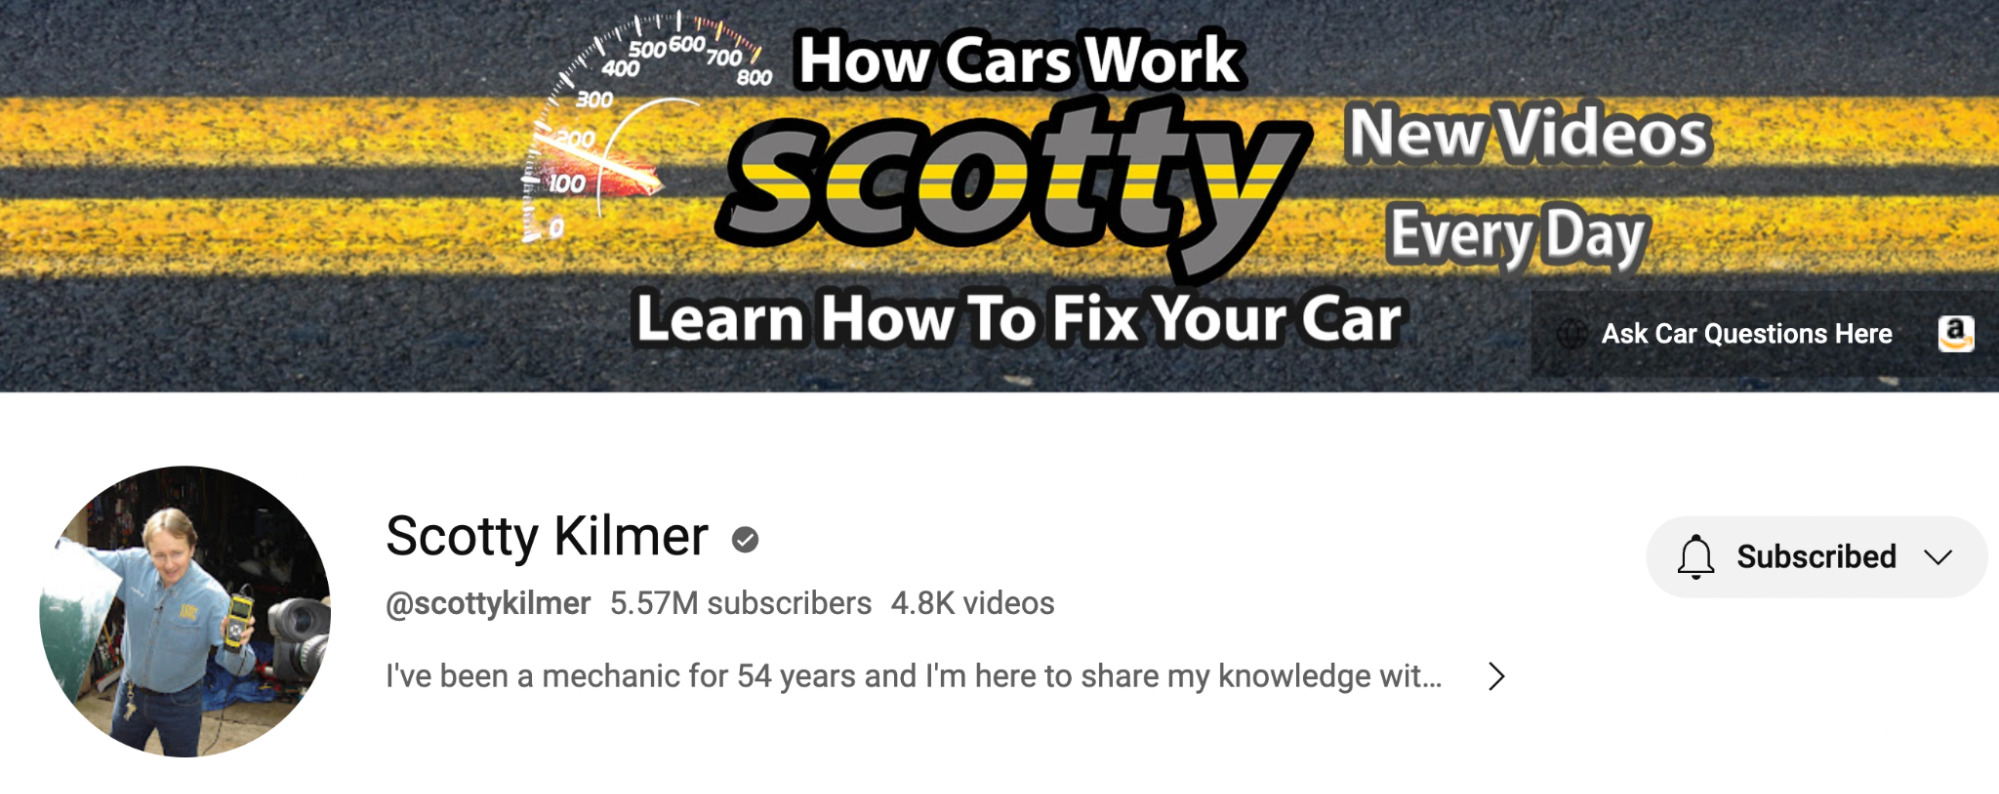 Scotty Kilmer 的 YouTube 频道